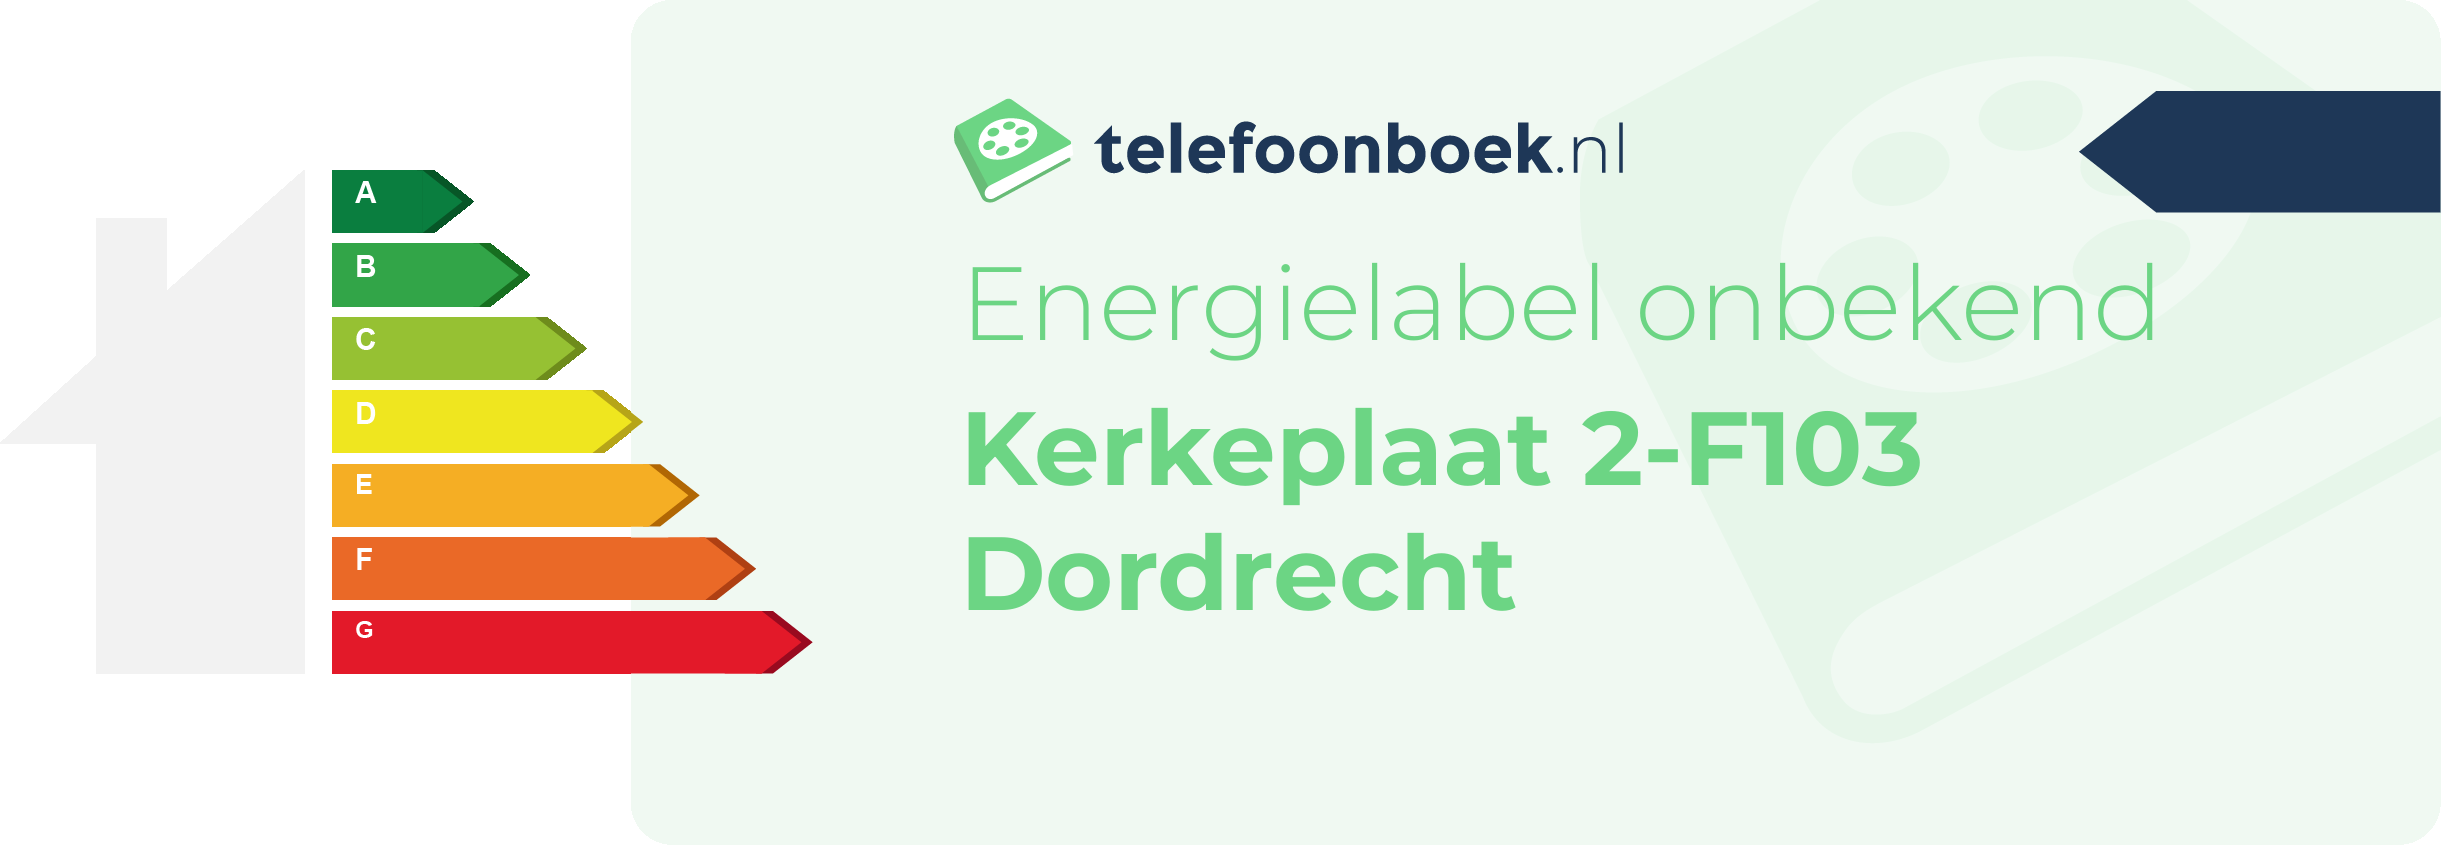 Energielabel Kerkeplaat 2-F103 Dordrecht